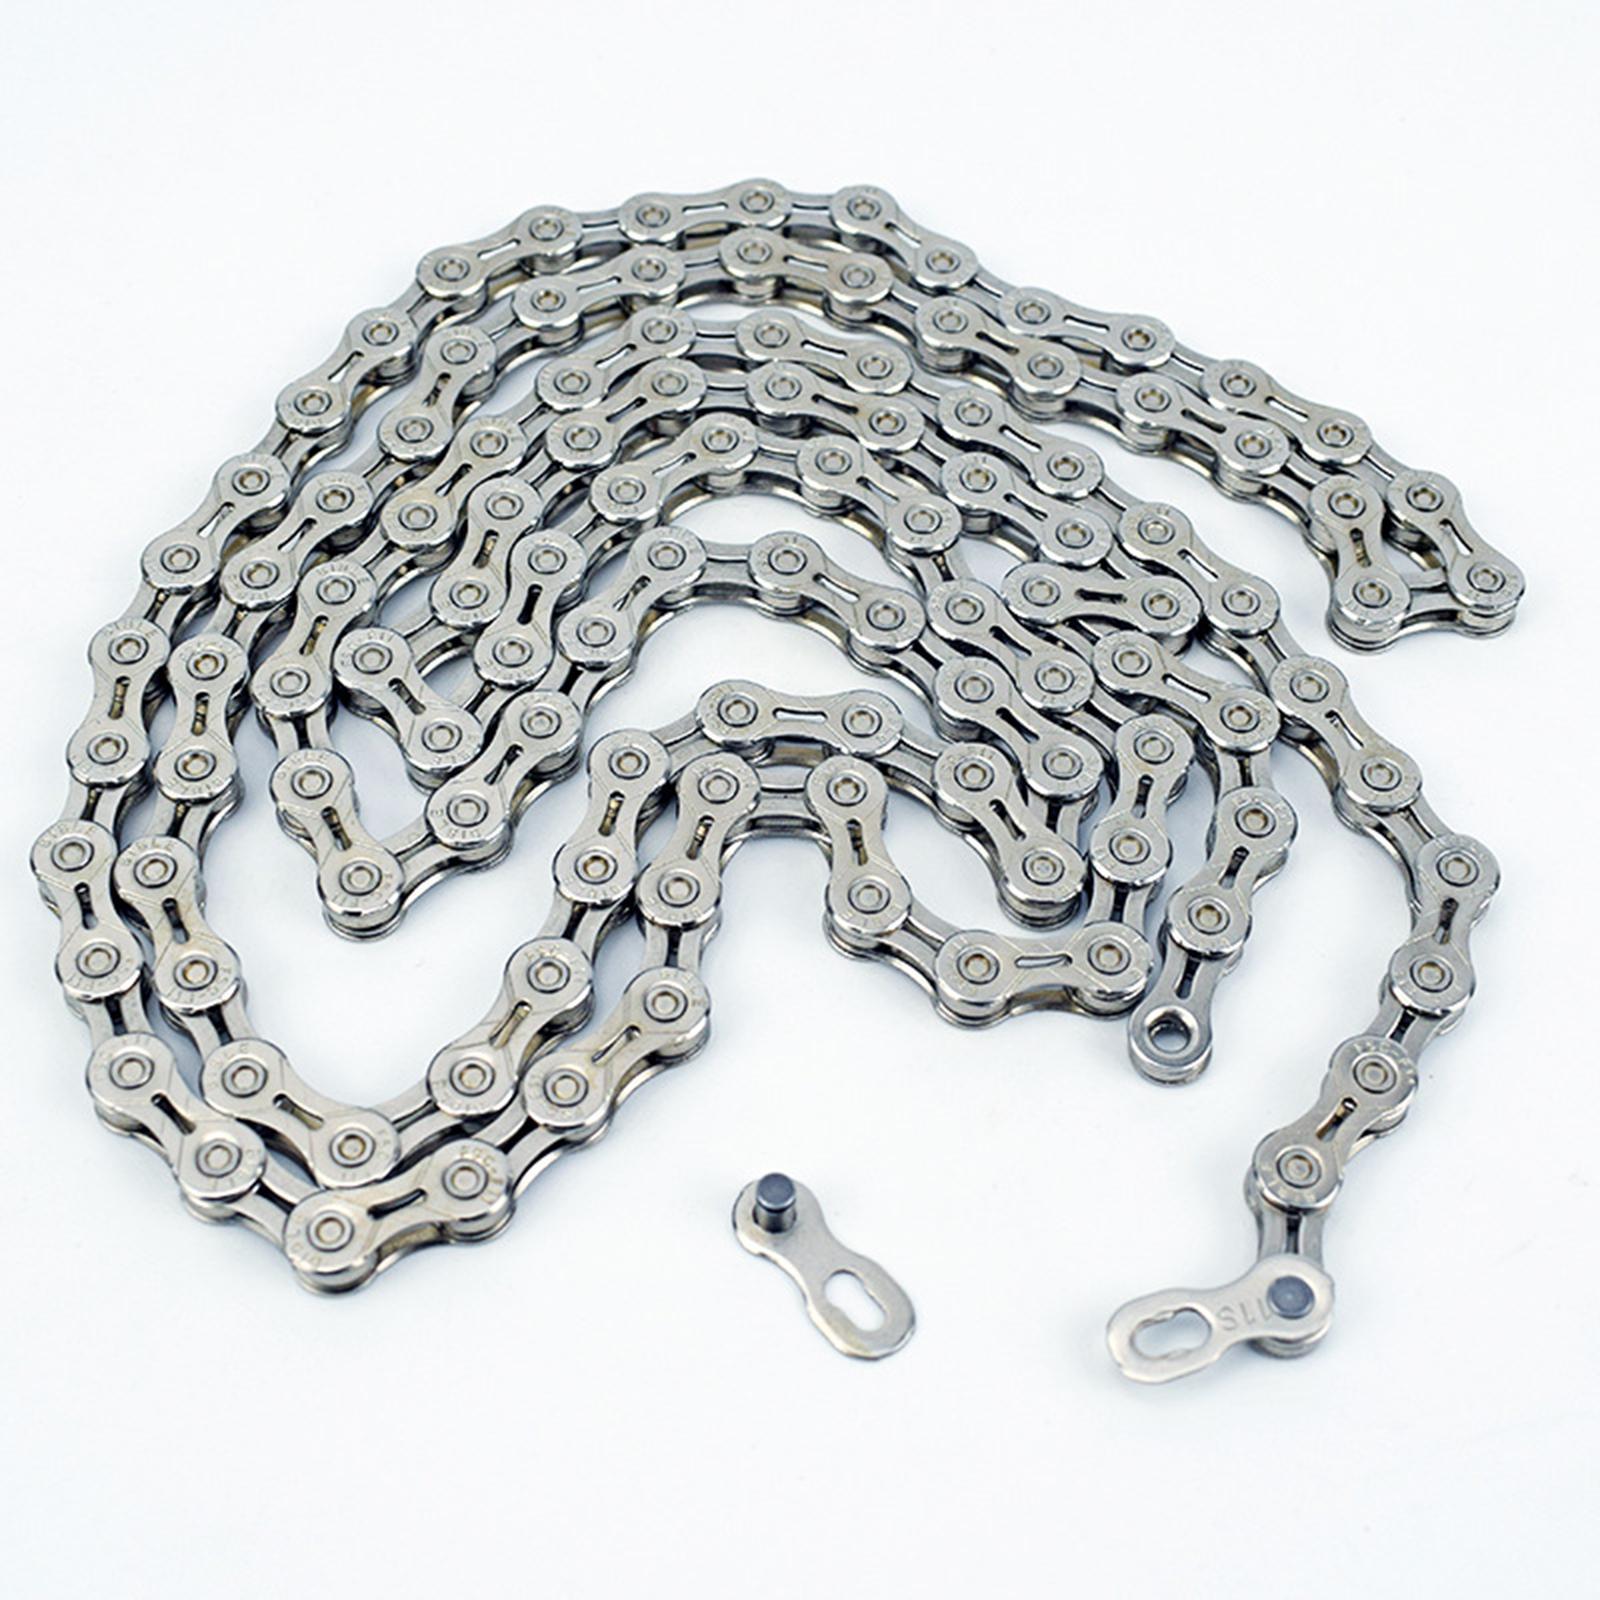 Chain Mountain  Chains   Repair Component